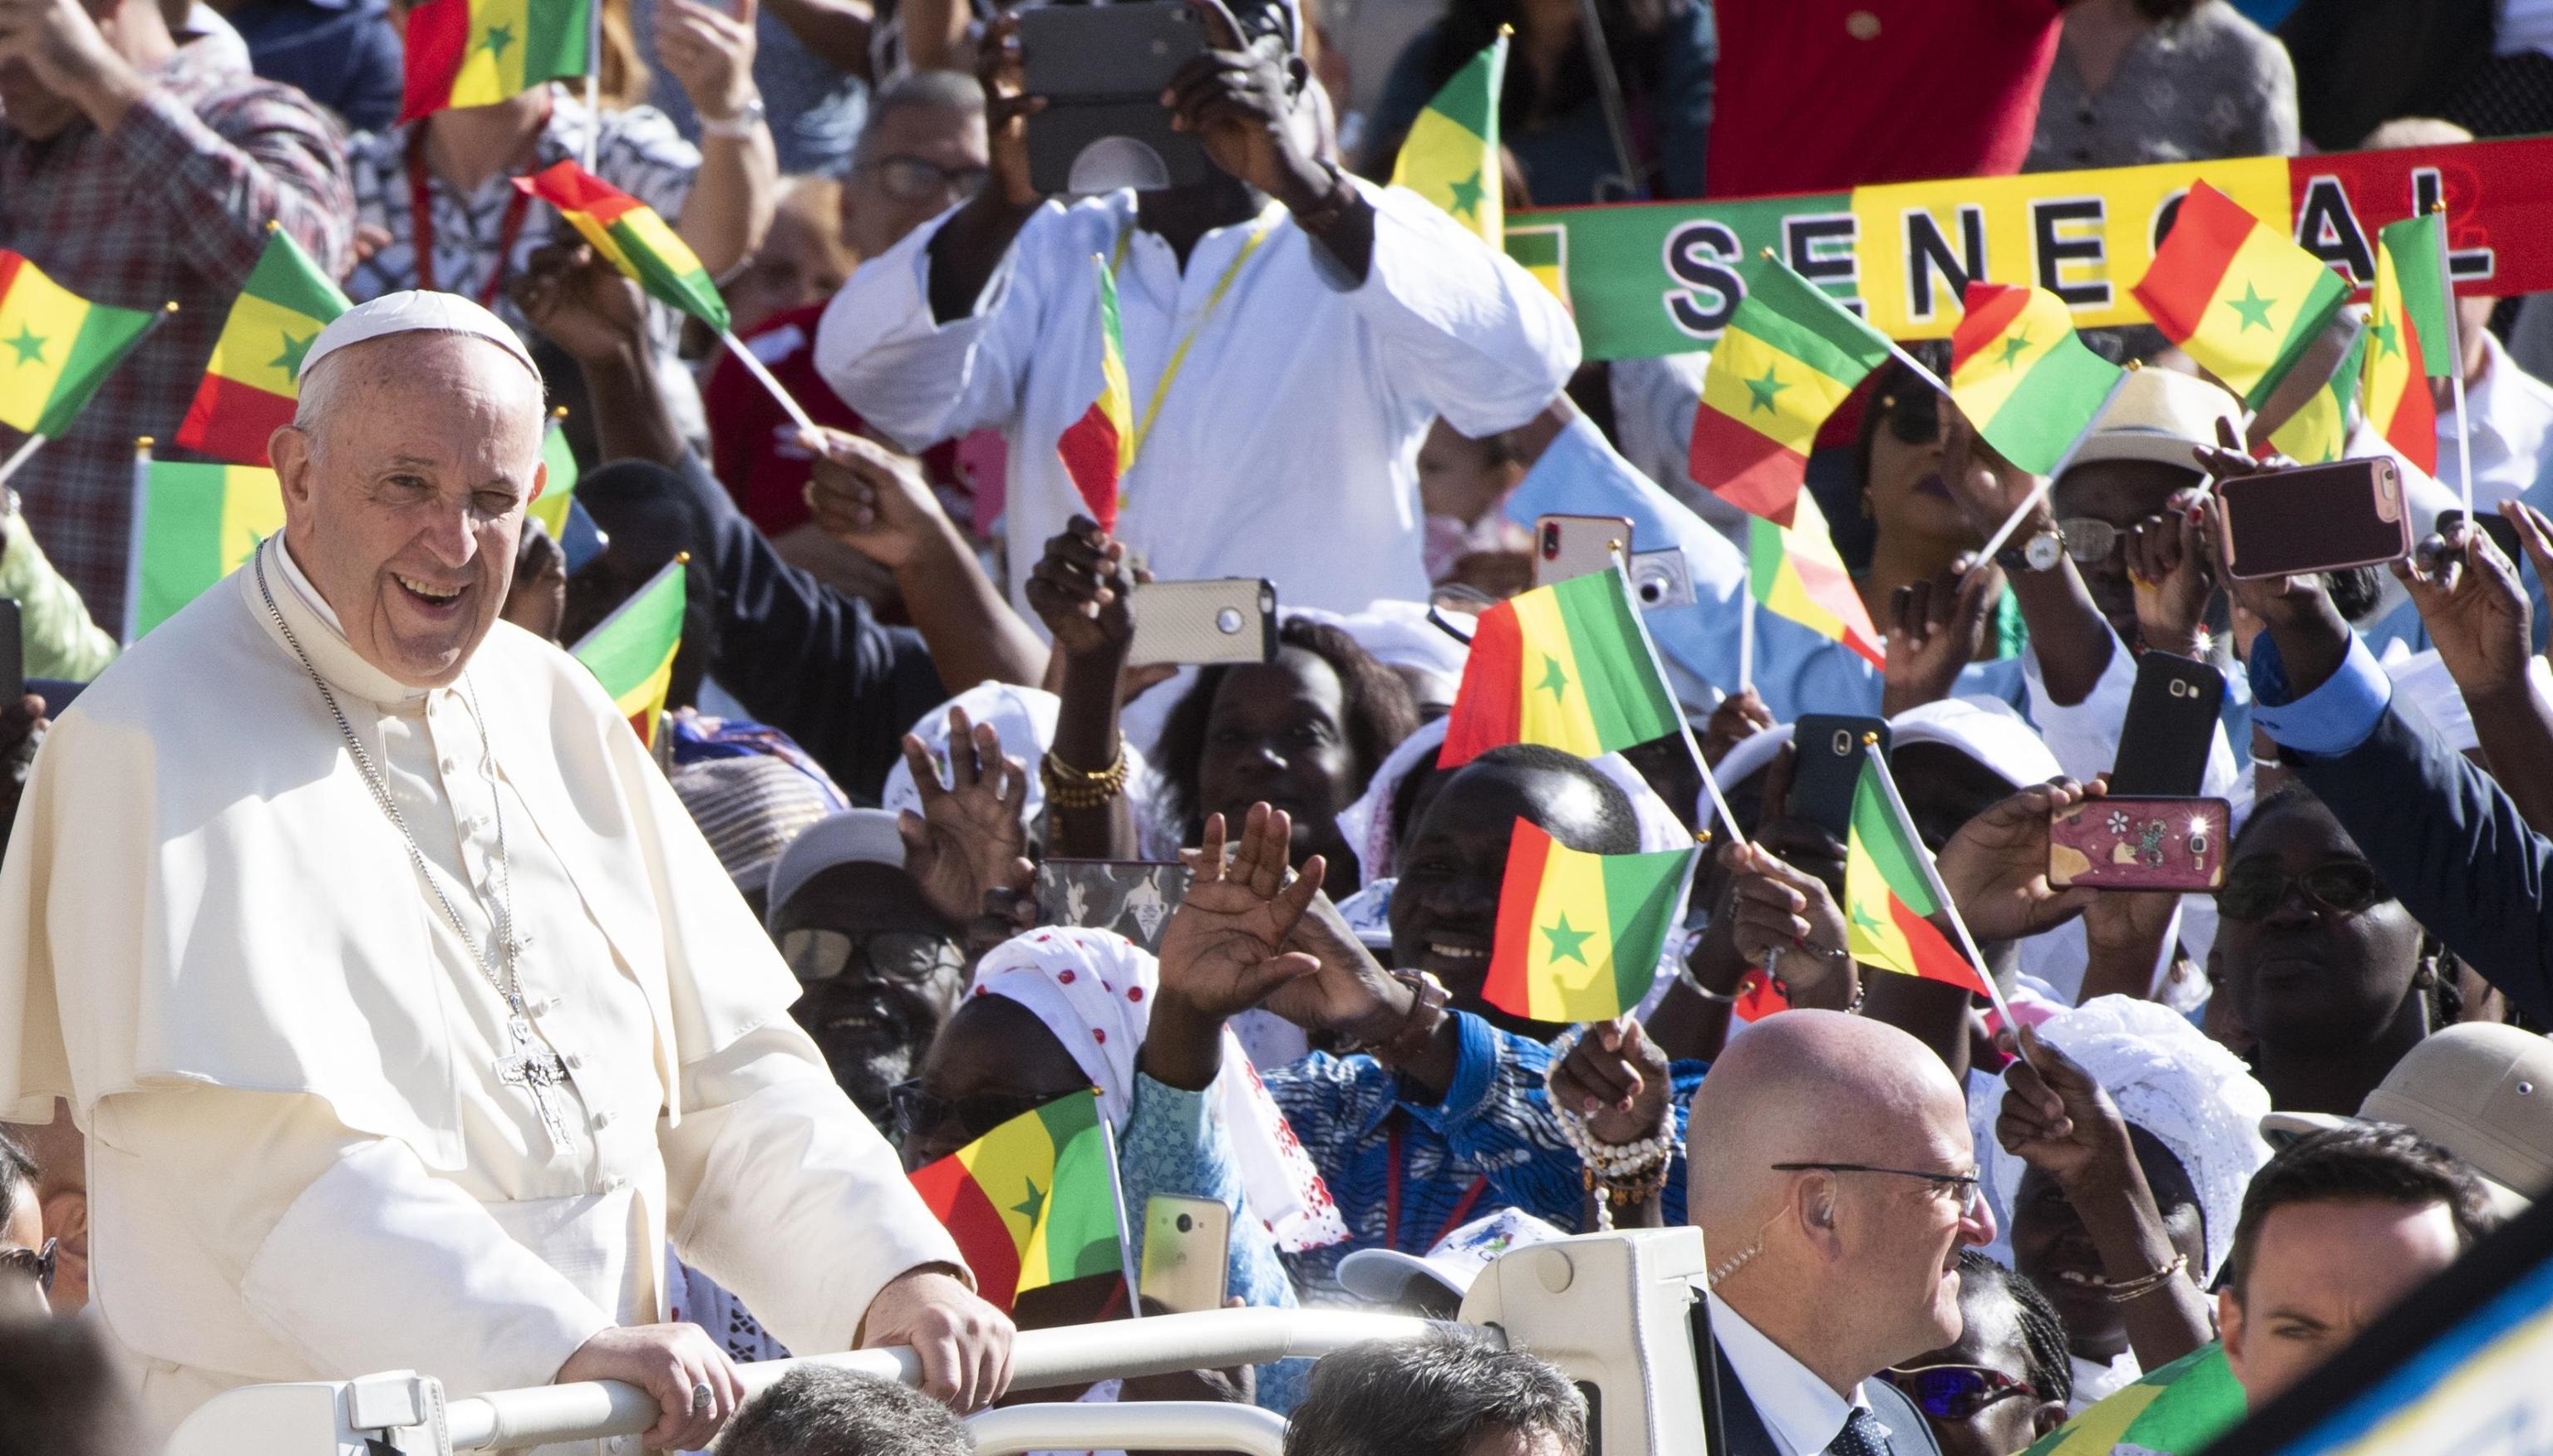 Una folta comunità senegalese saluta il Papa di ritorno dal viaggio apostolico in Africa